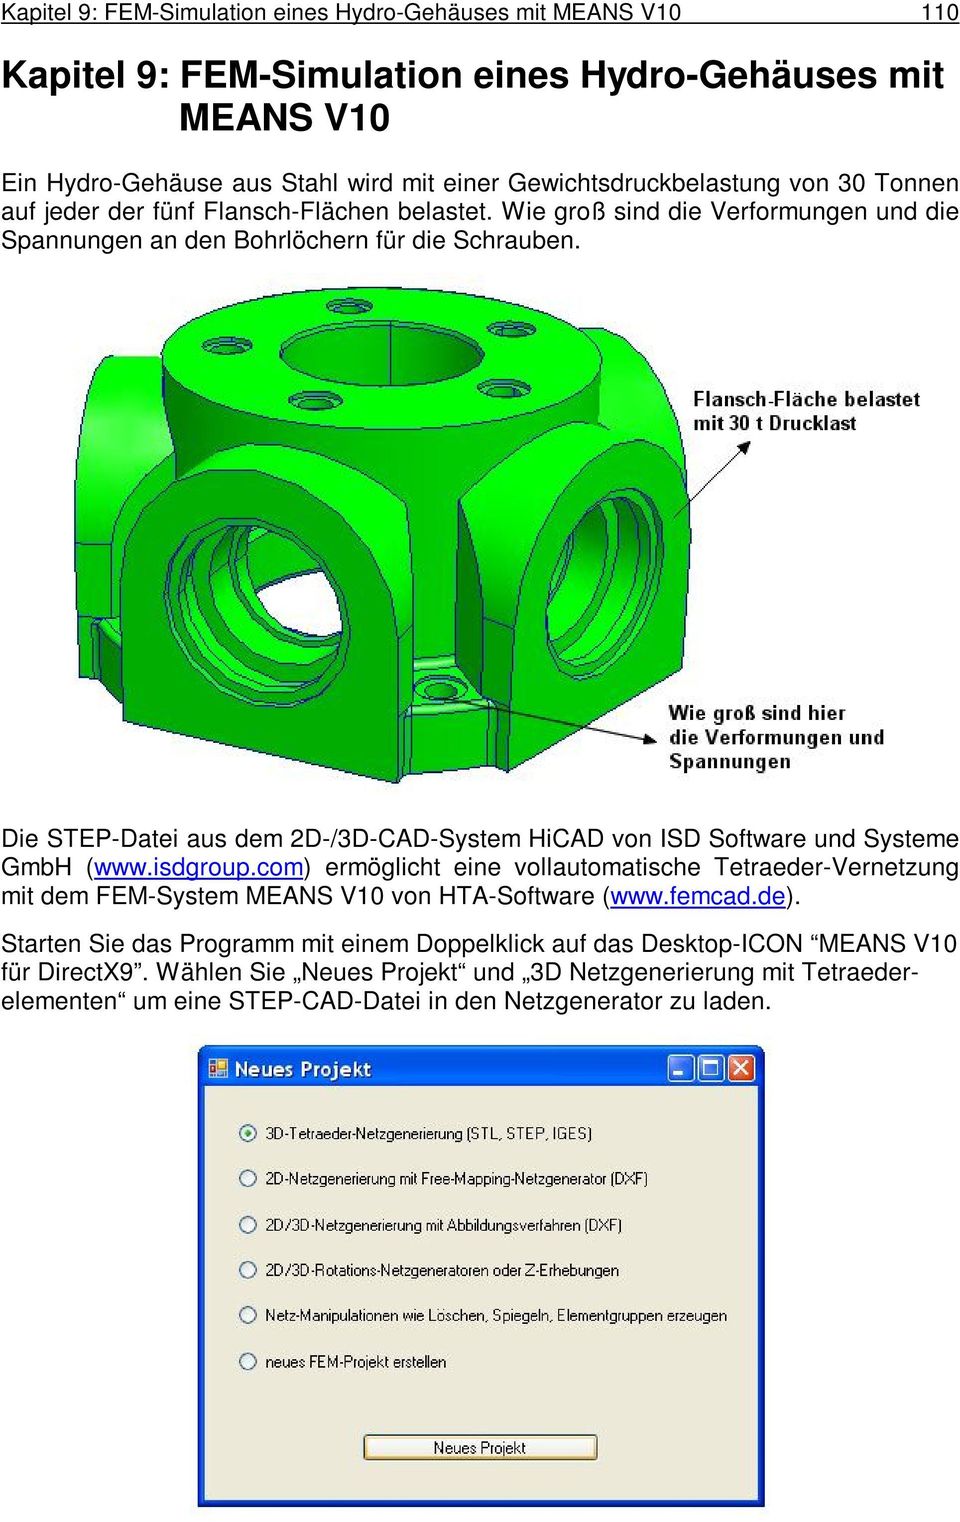 Die STEP-Datei aus dem 2D-/3D-CAD-System HiCAD von ISD Software und Systeme GmbH (www.isdgroup.